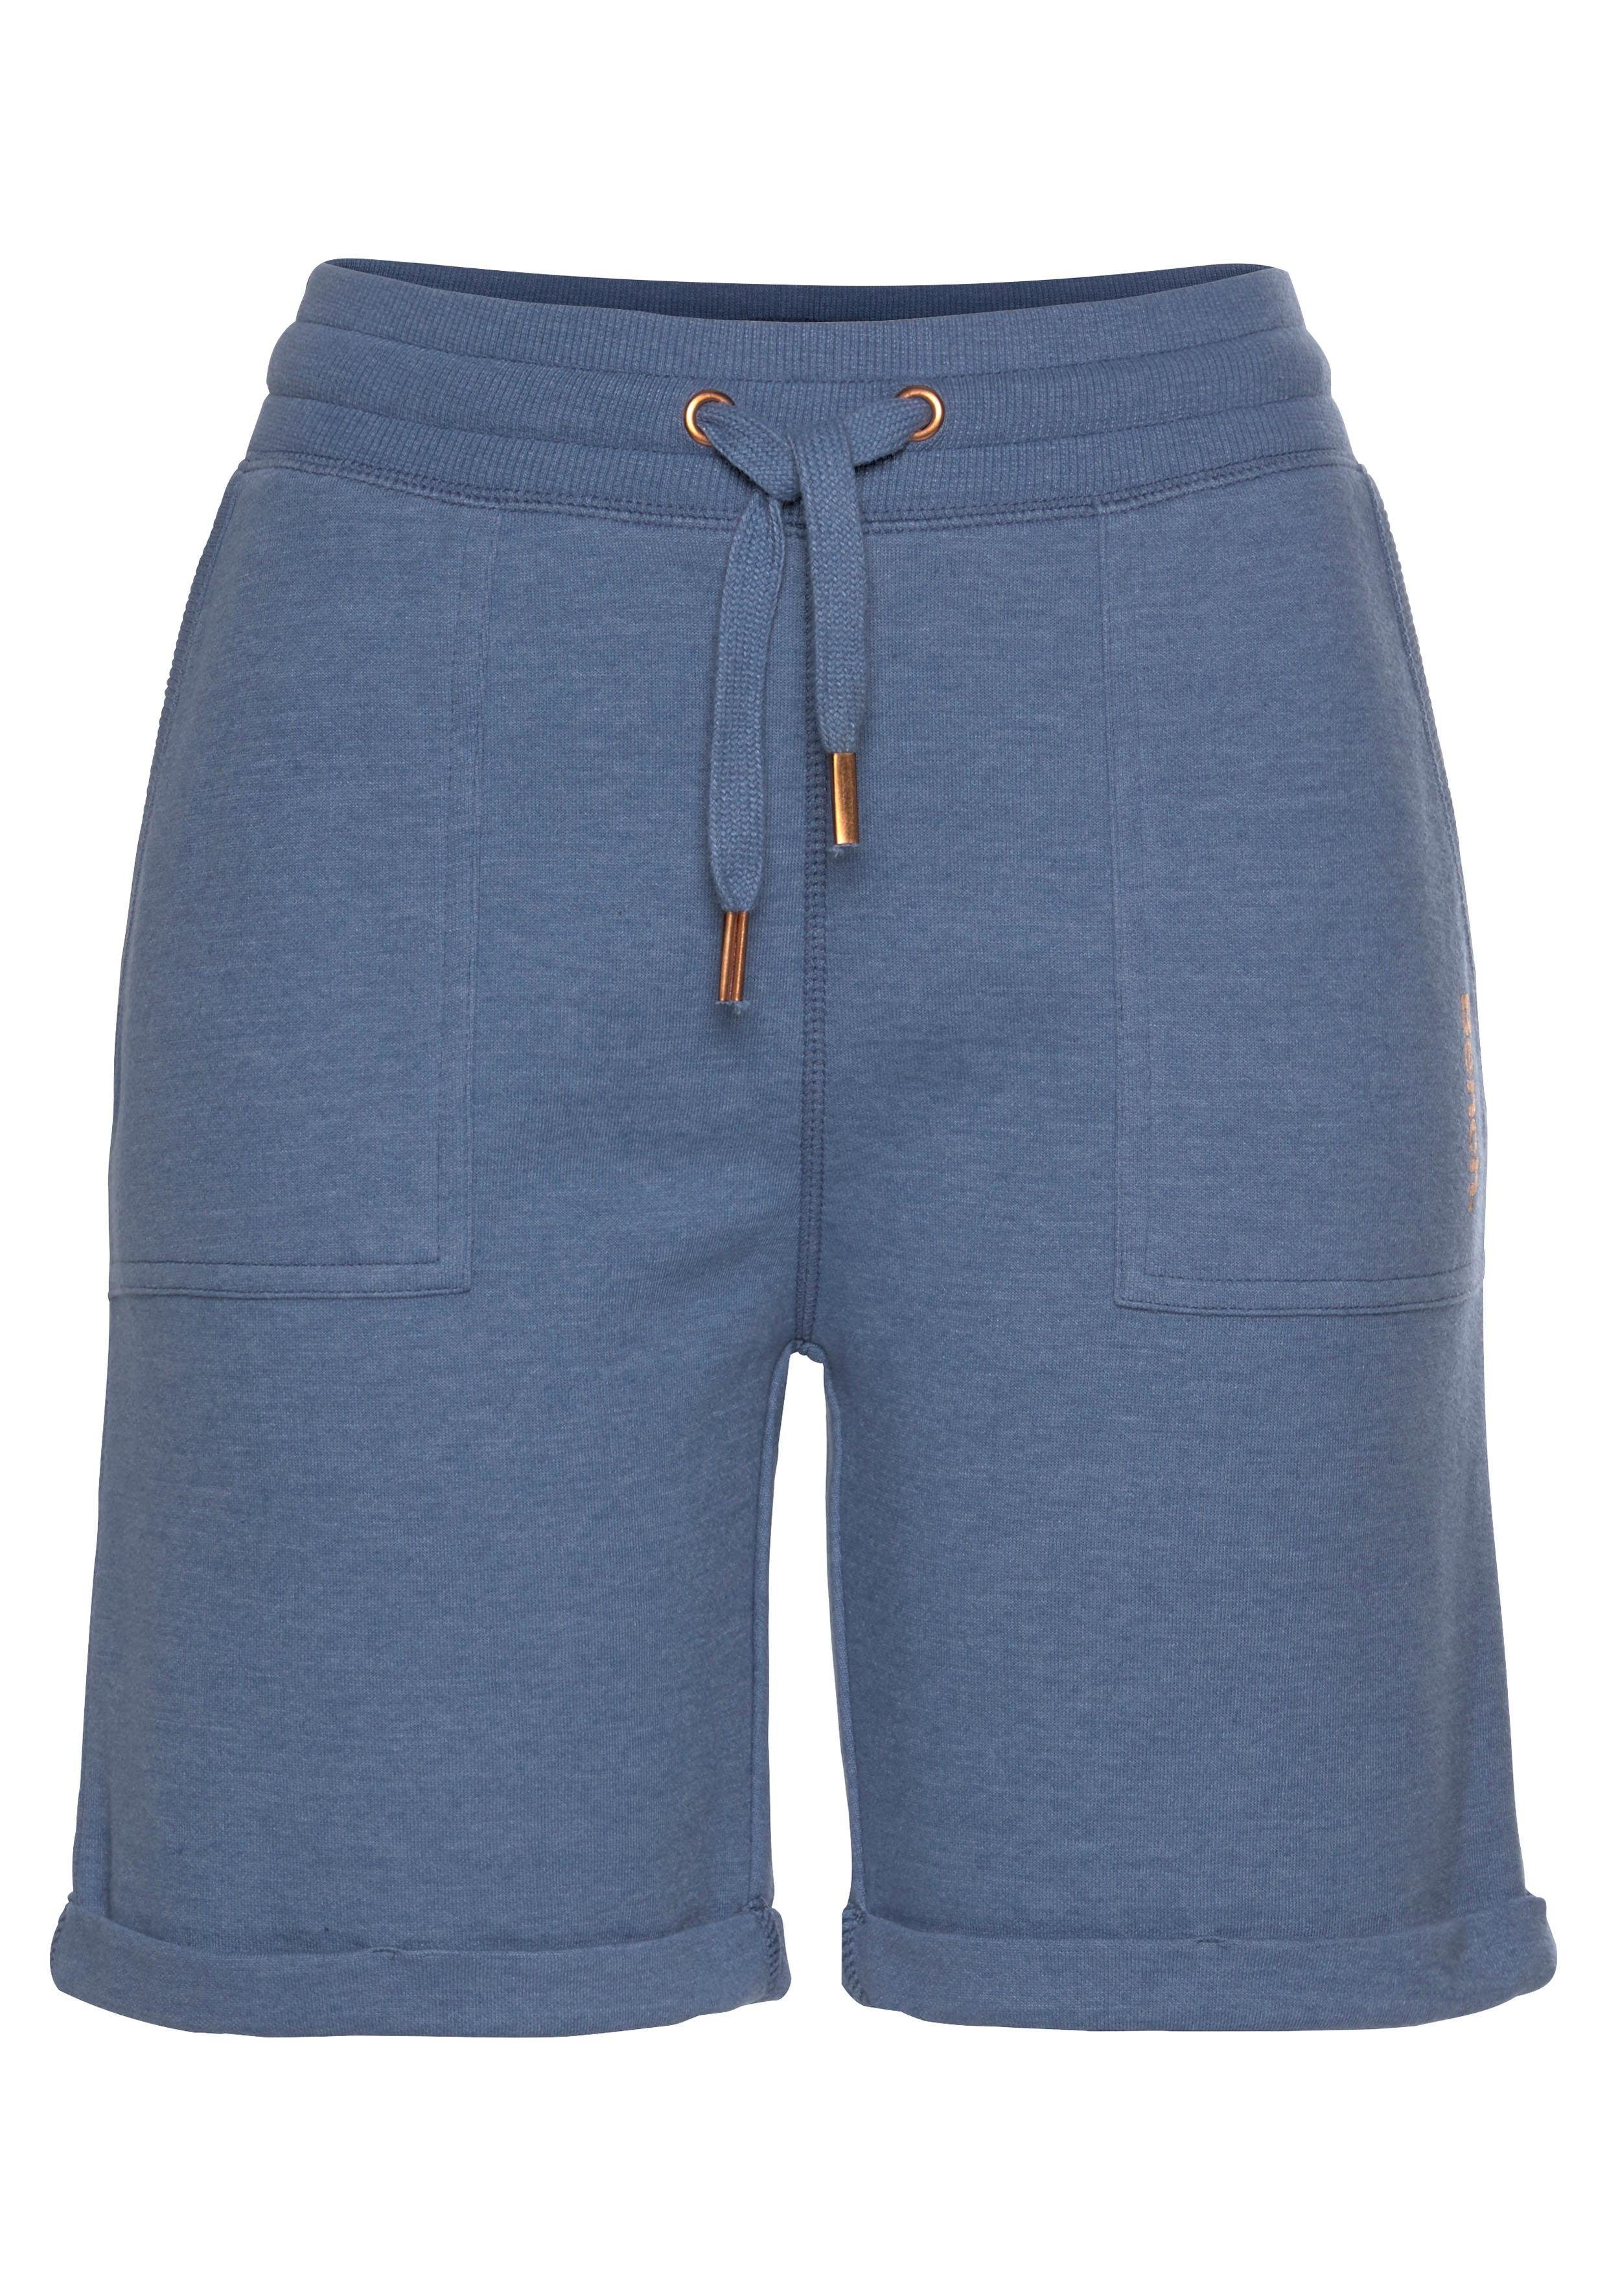 Taschen mit Beinsäumen und Bench. jeans-meliert Sweathose Loungewear seitlichen Bermudas -kurze aufgeschlagenen